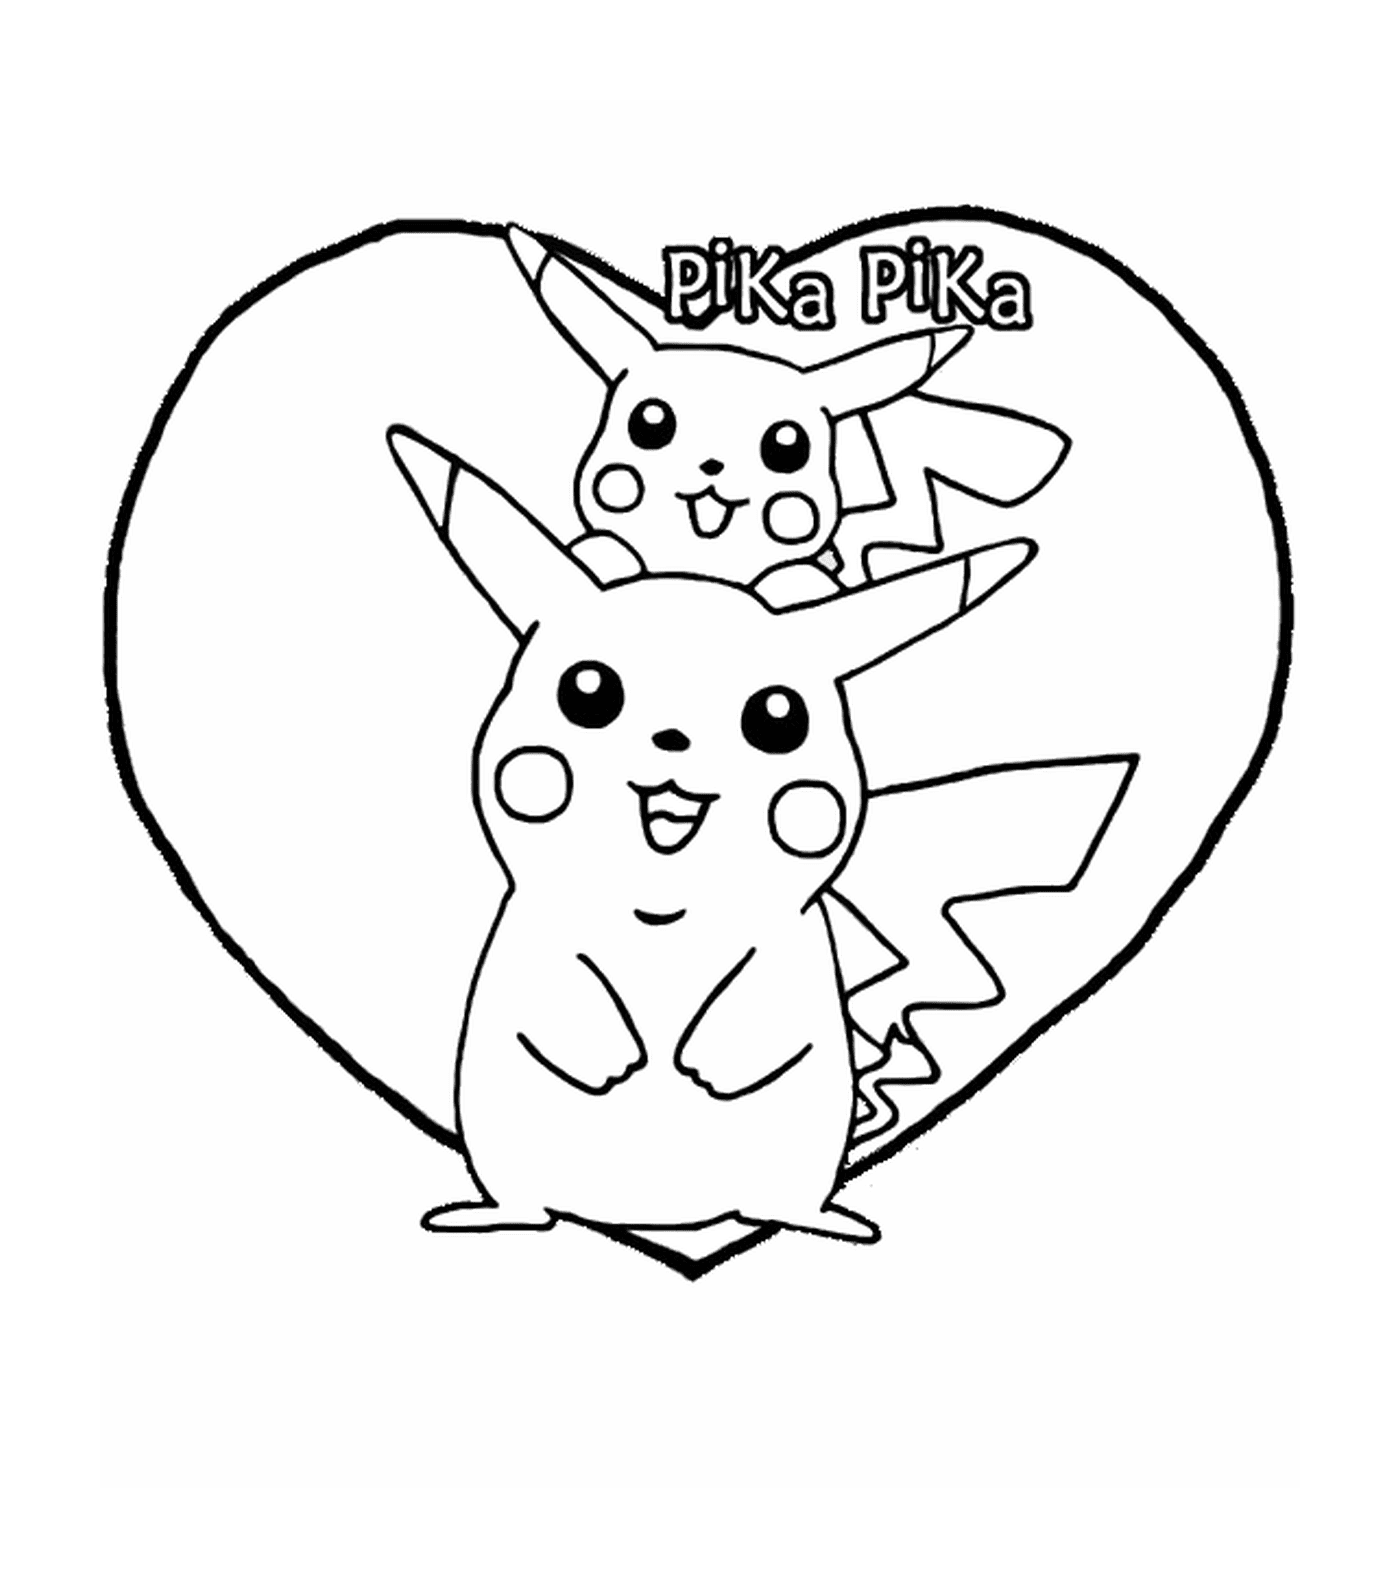   Pikachu, cœur adorable 